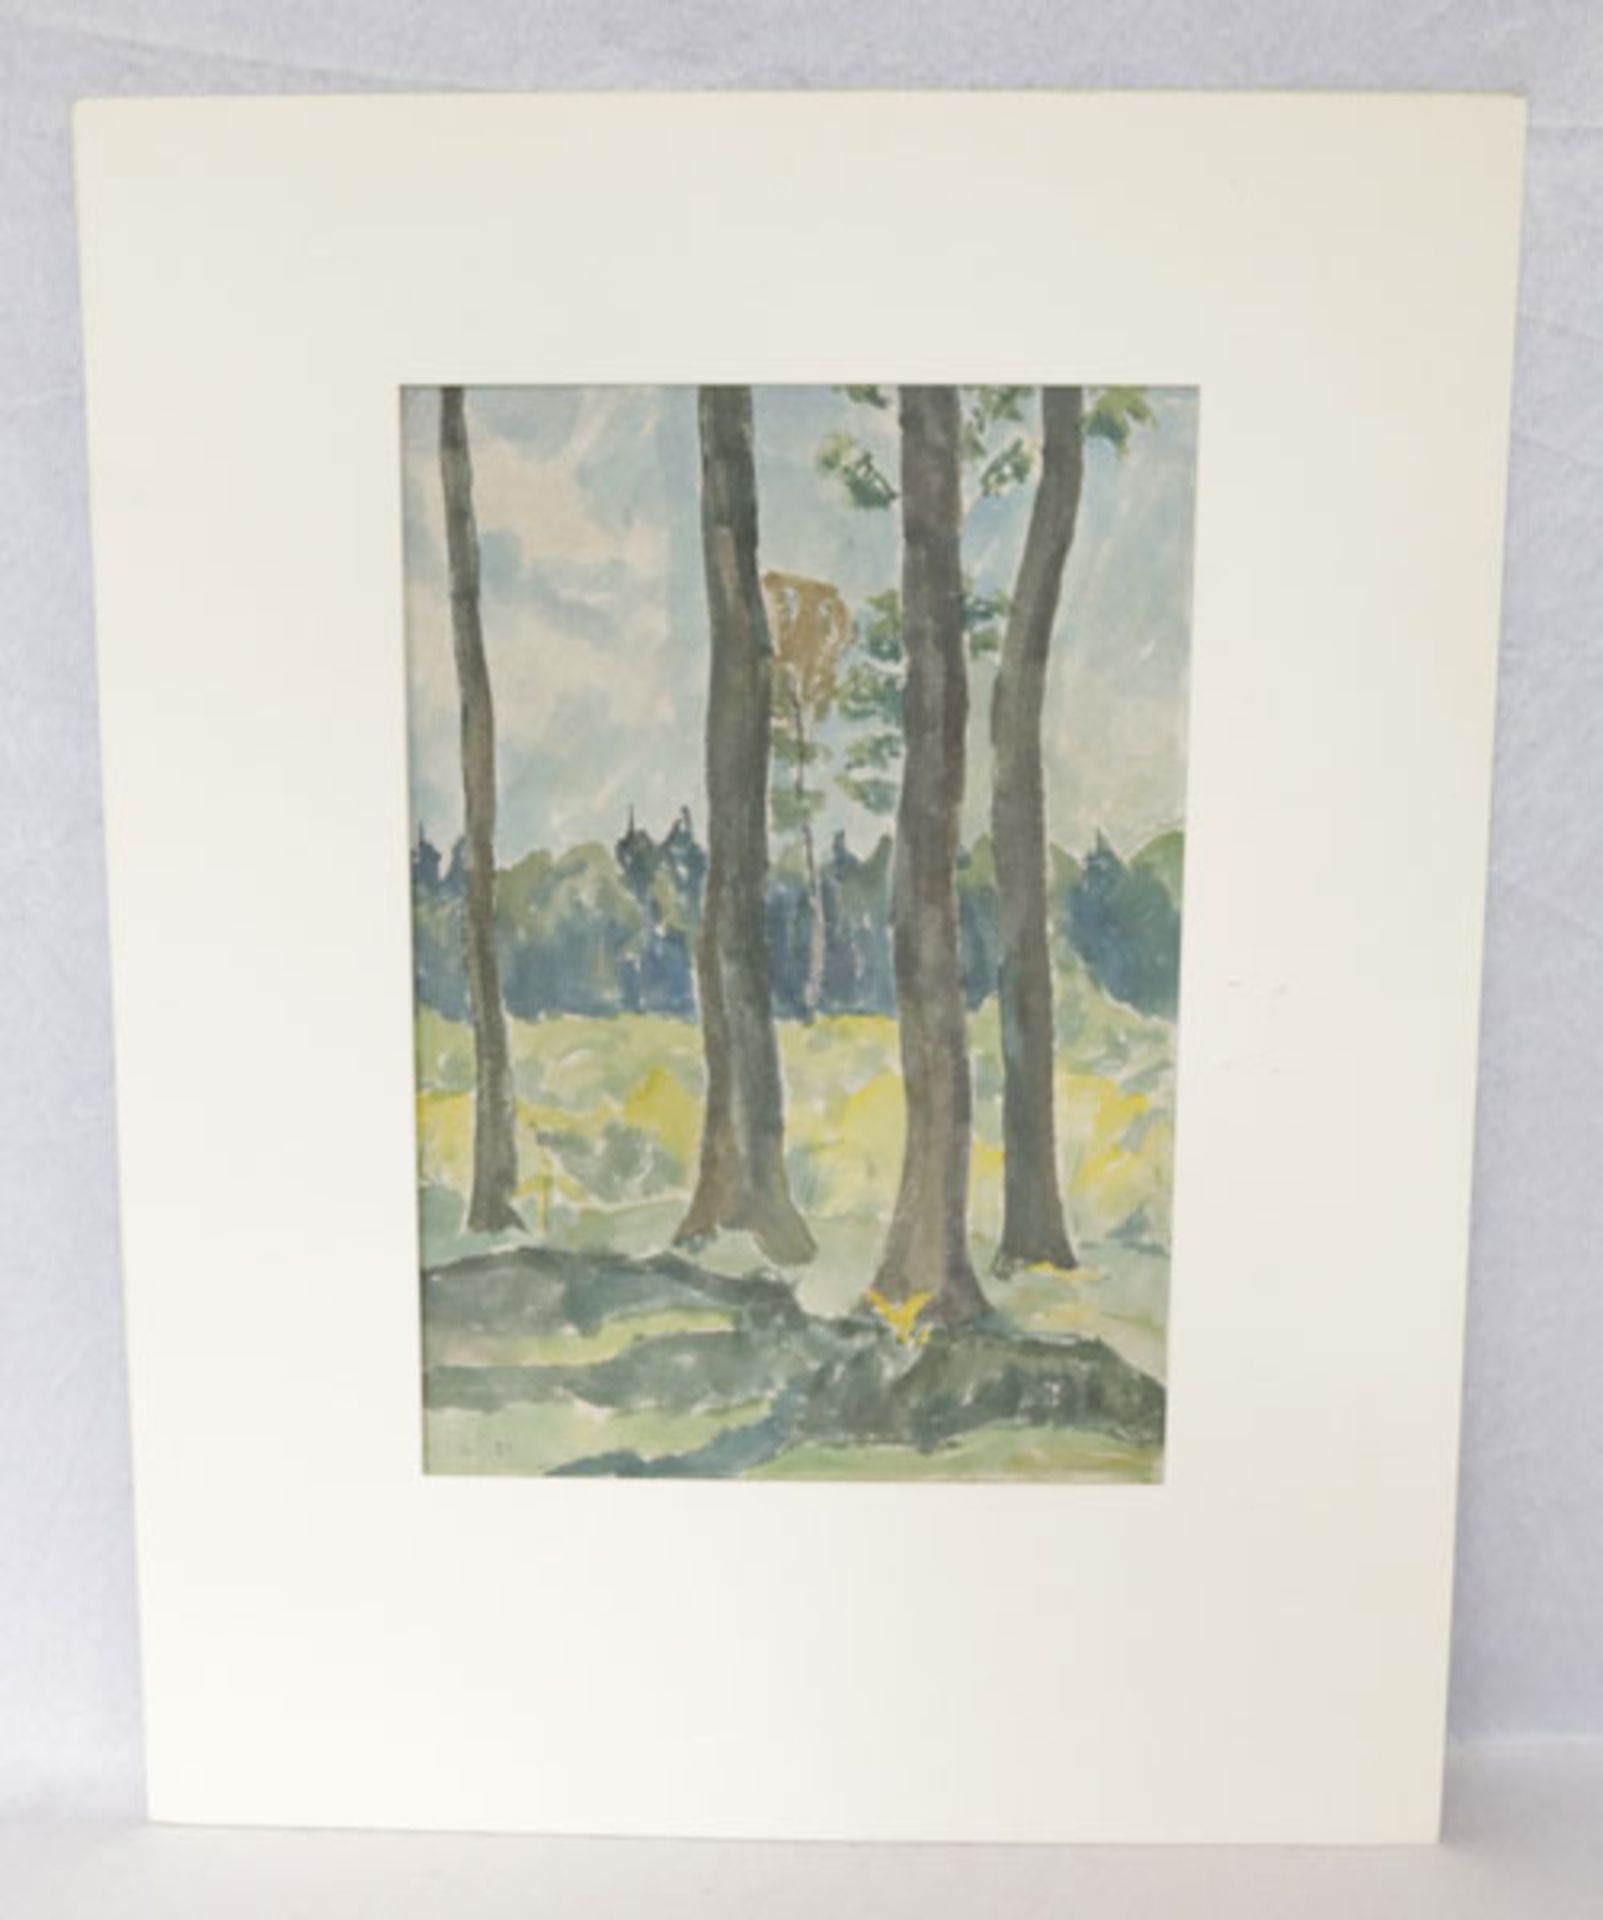 Aquarell 'Waldlichtung', signiert H. Hag. für Hanns Hagenauer, Maler, Landschaften, Expressionist, *